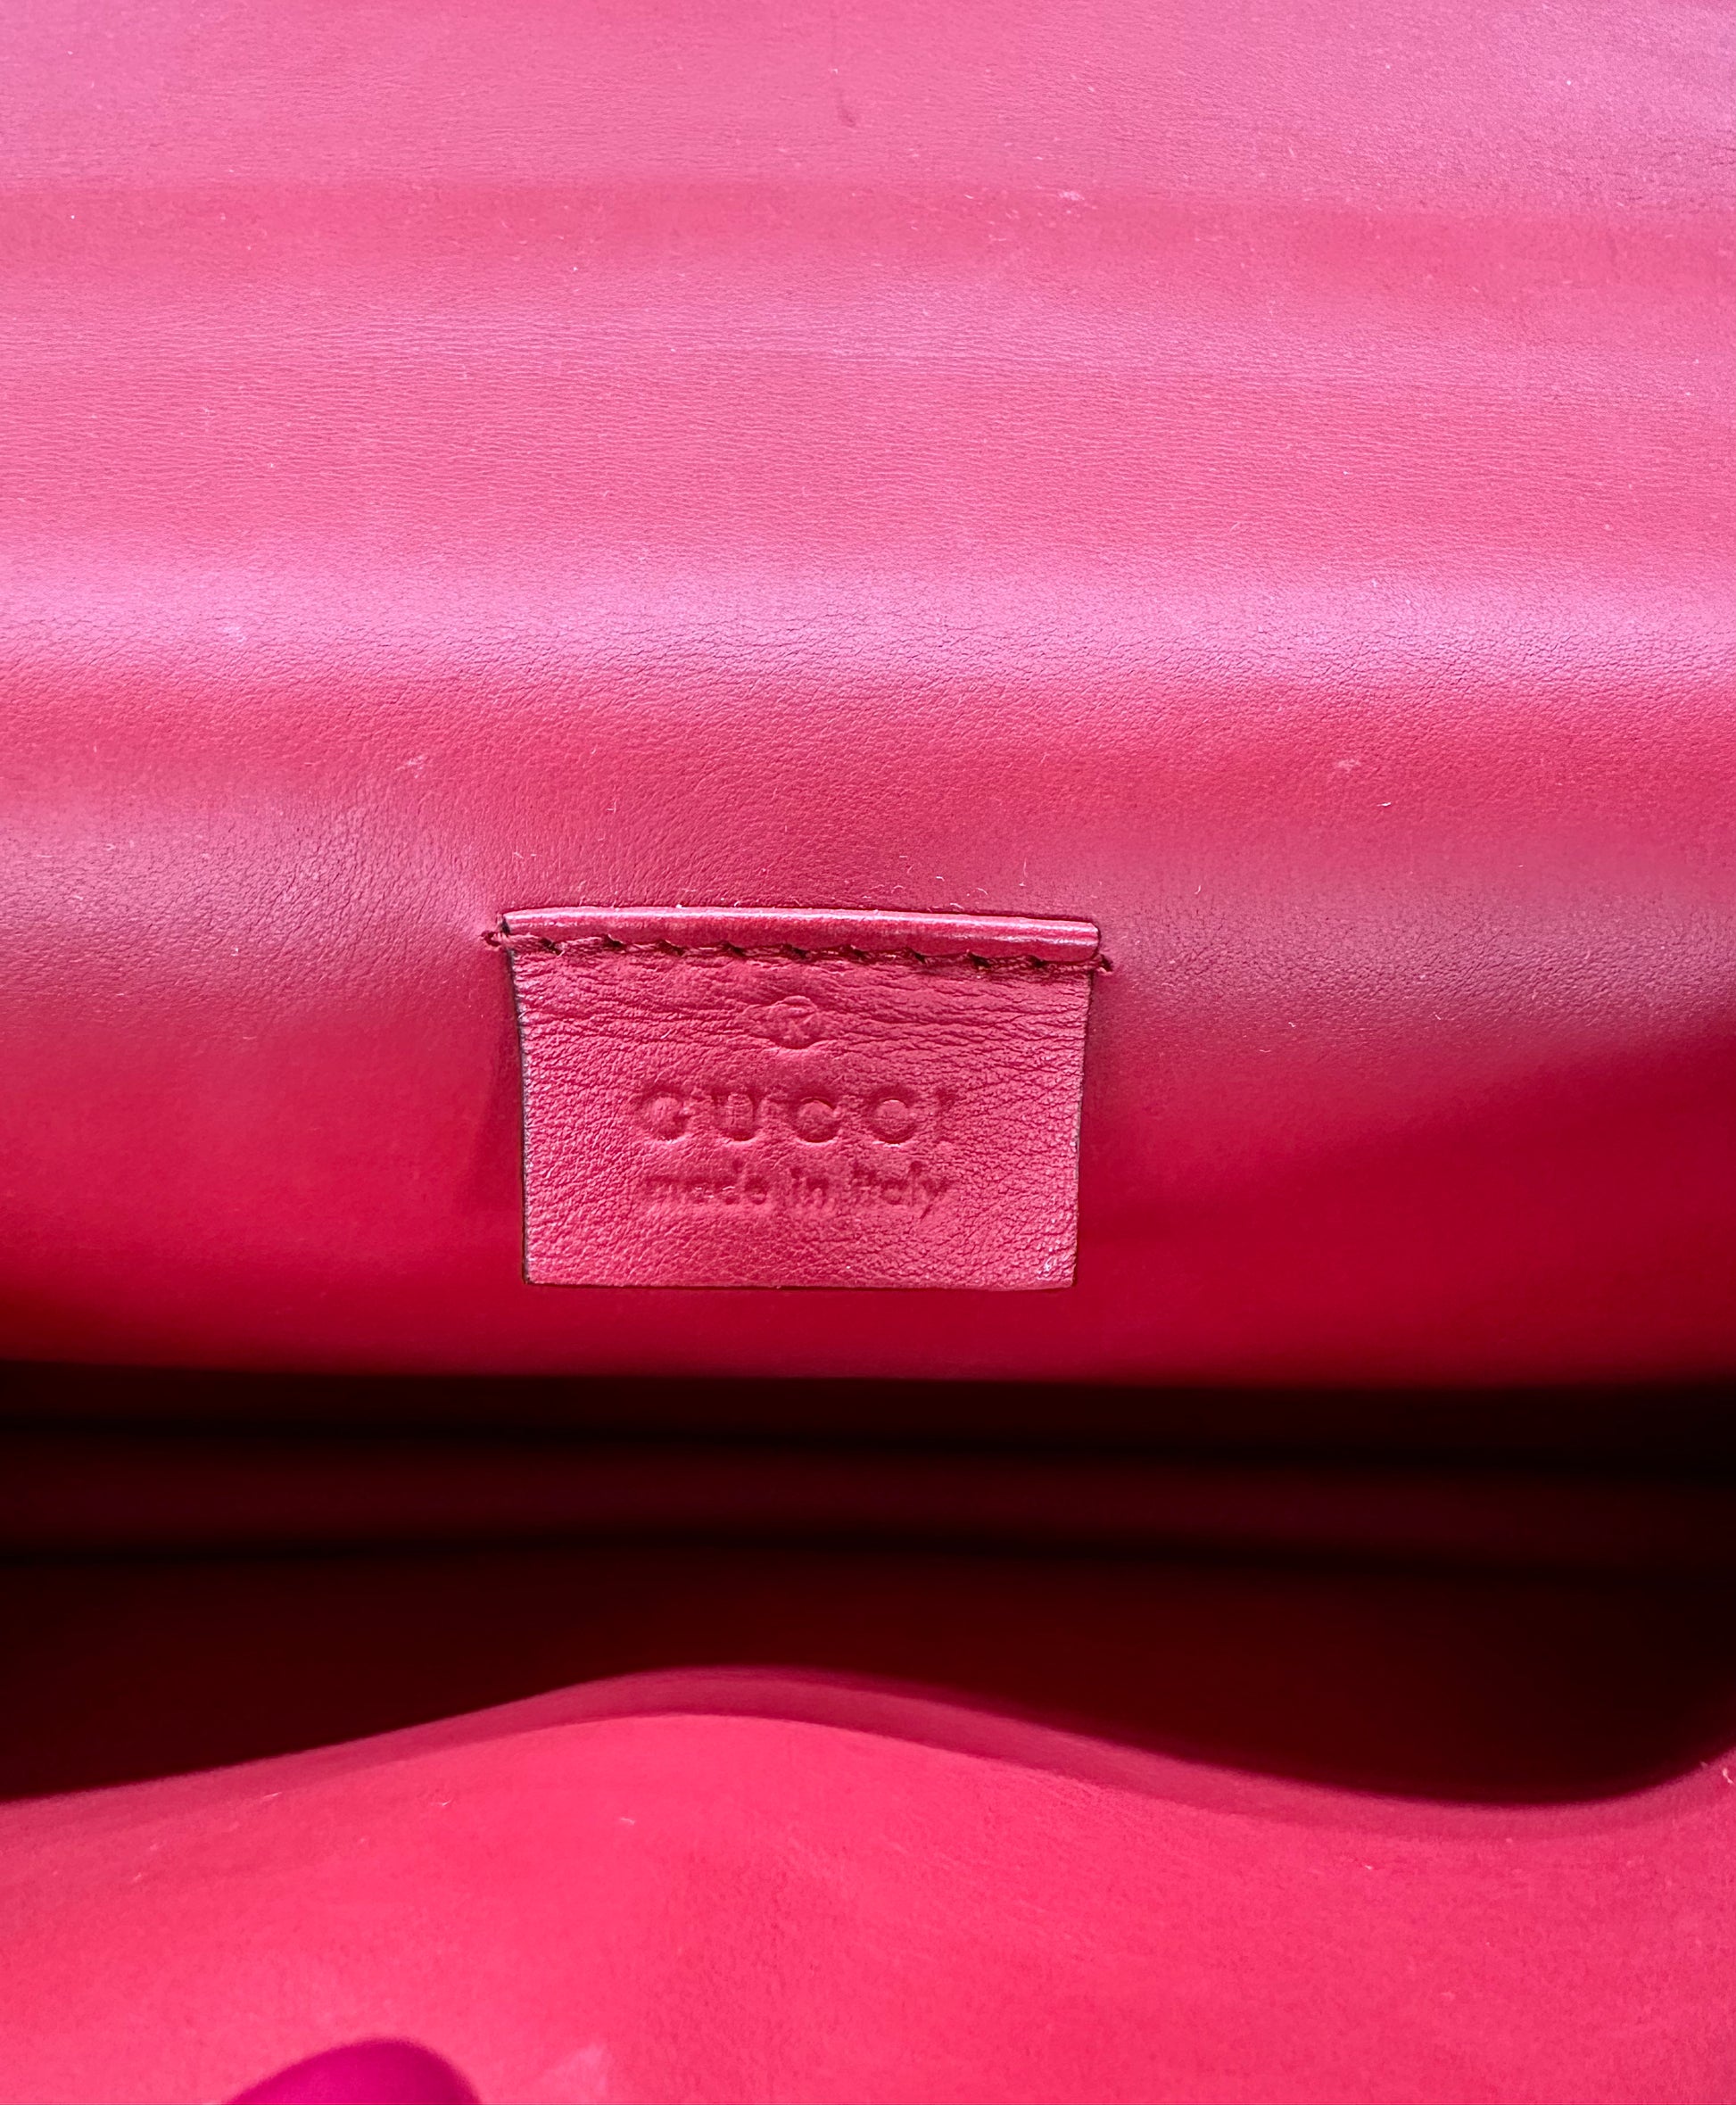 Close up of Gucci tag